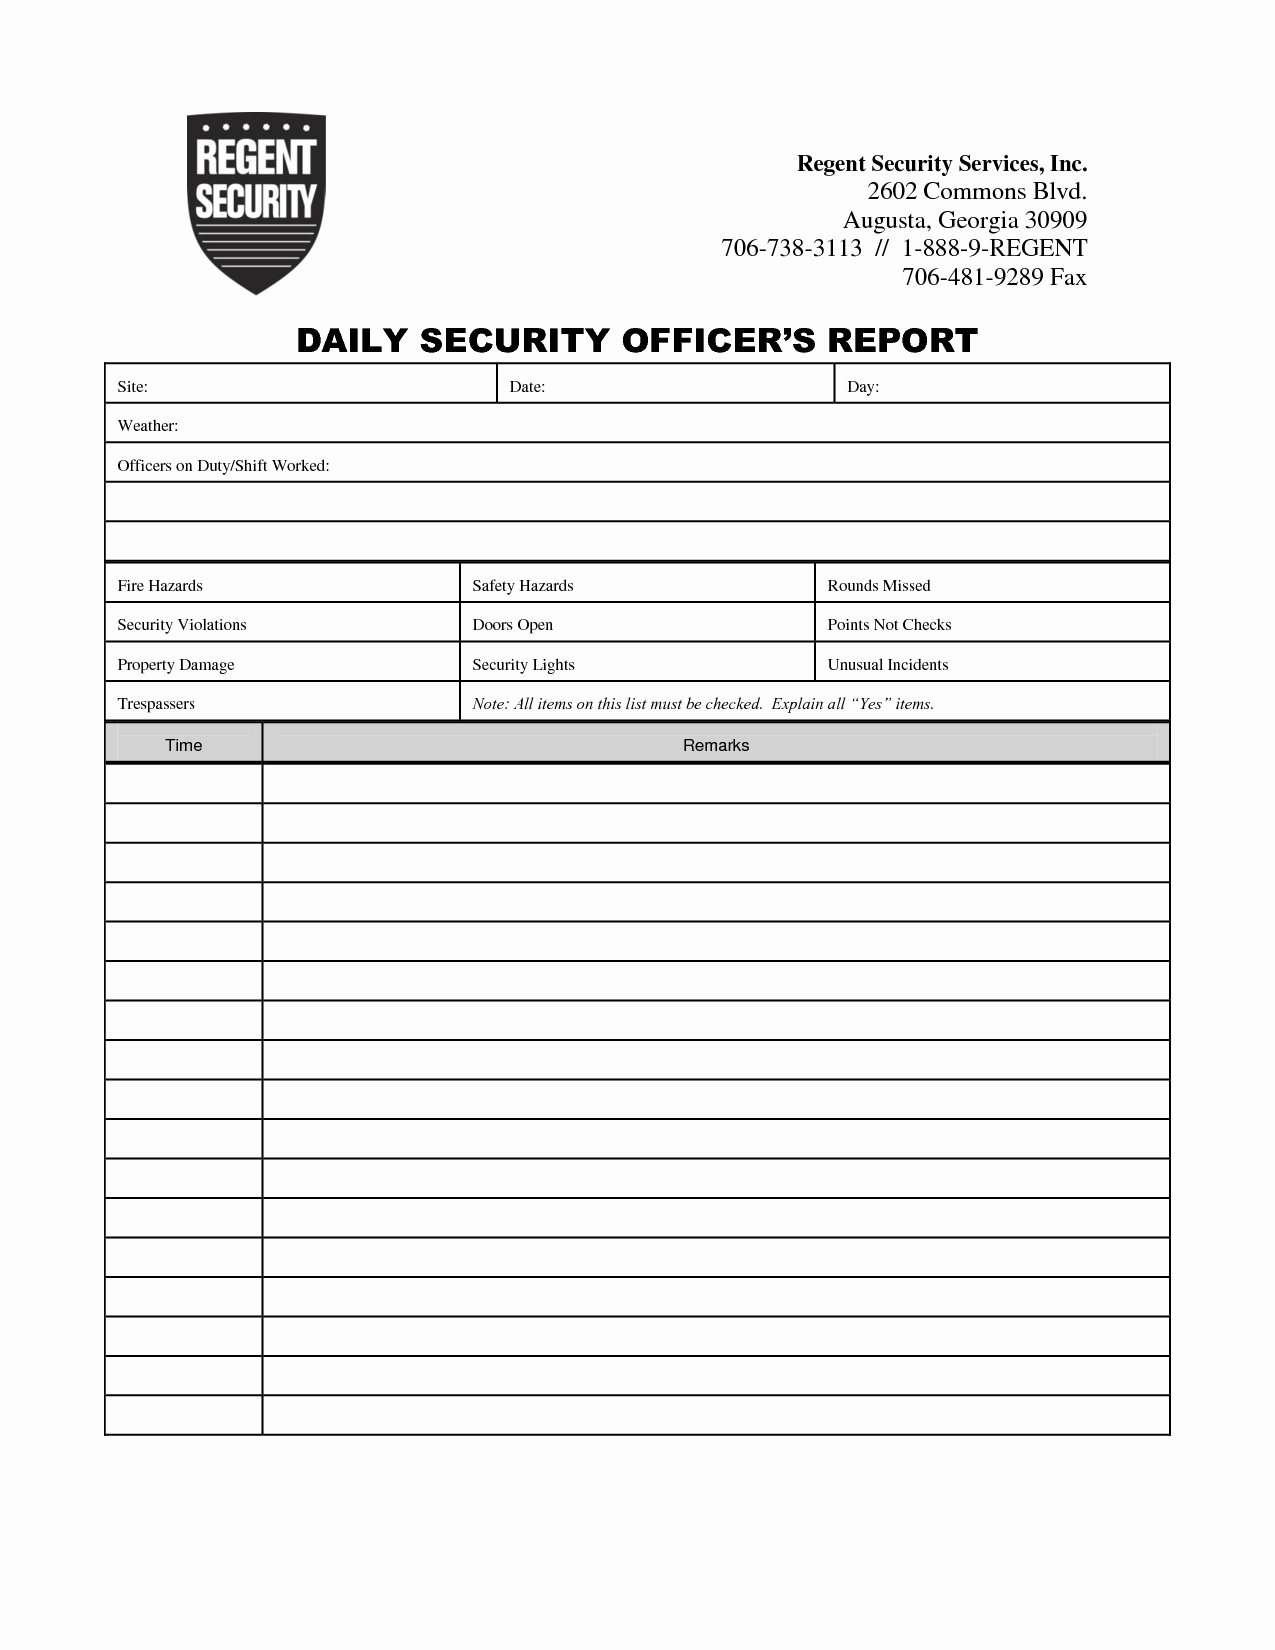 Weekly Activities Report Template Fresh Security Guard Daily Activity Report Template